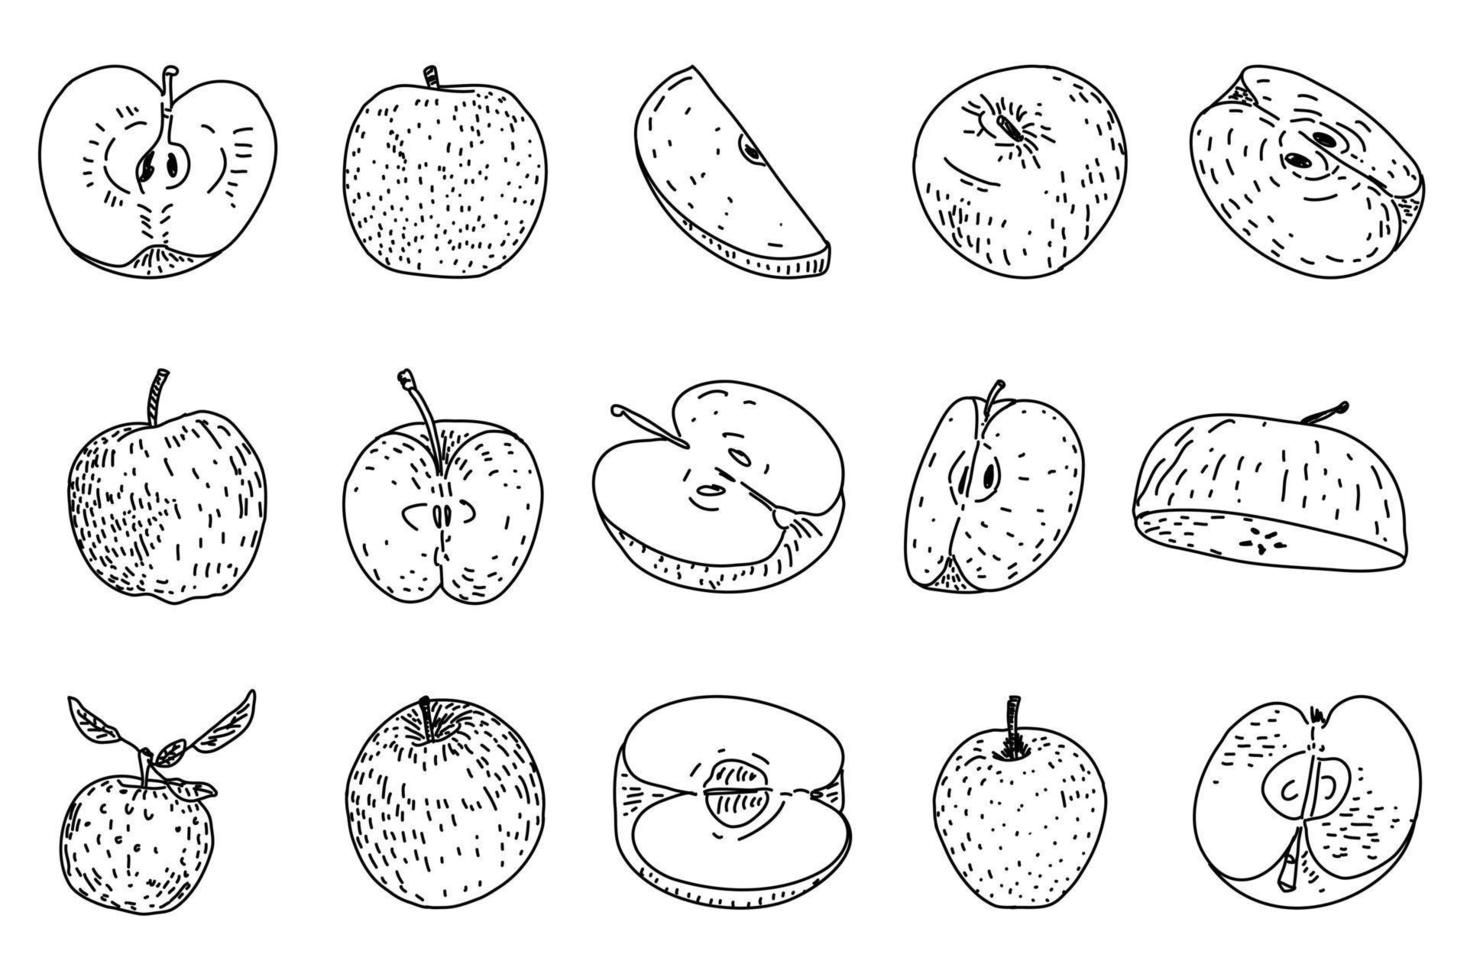 illustrazioni vettoriali disegnate a mano di mela.